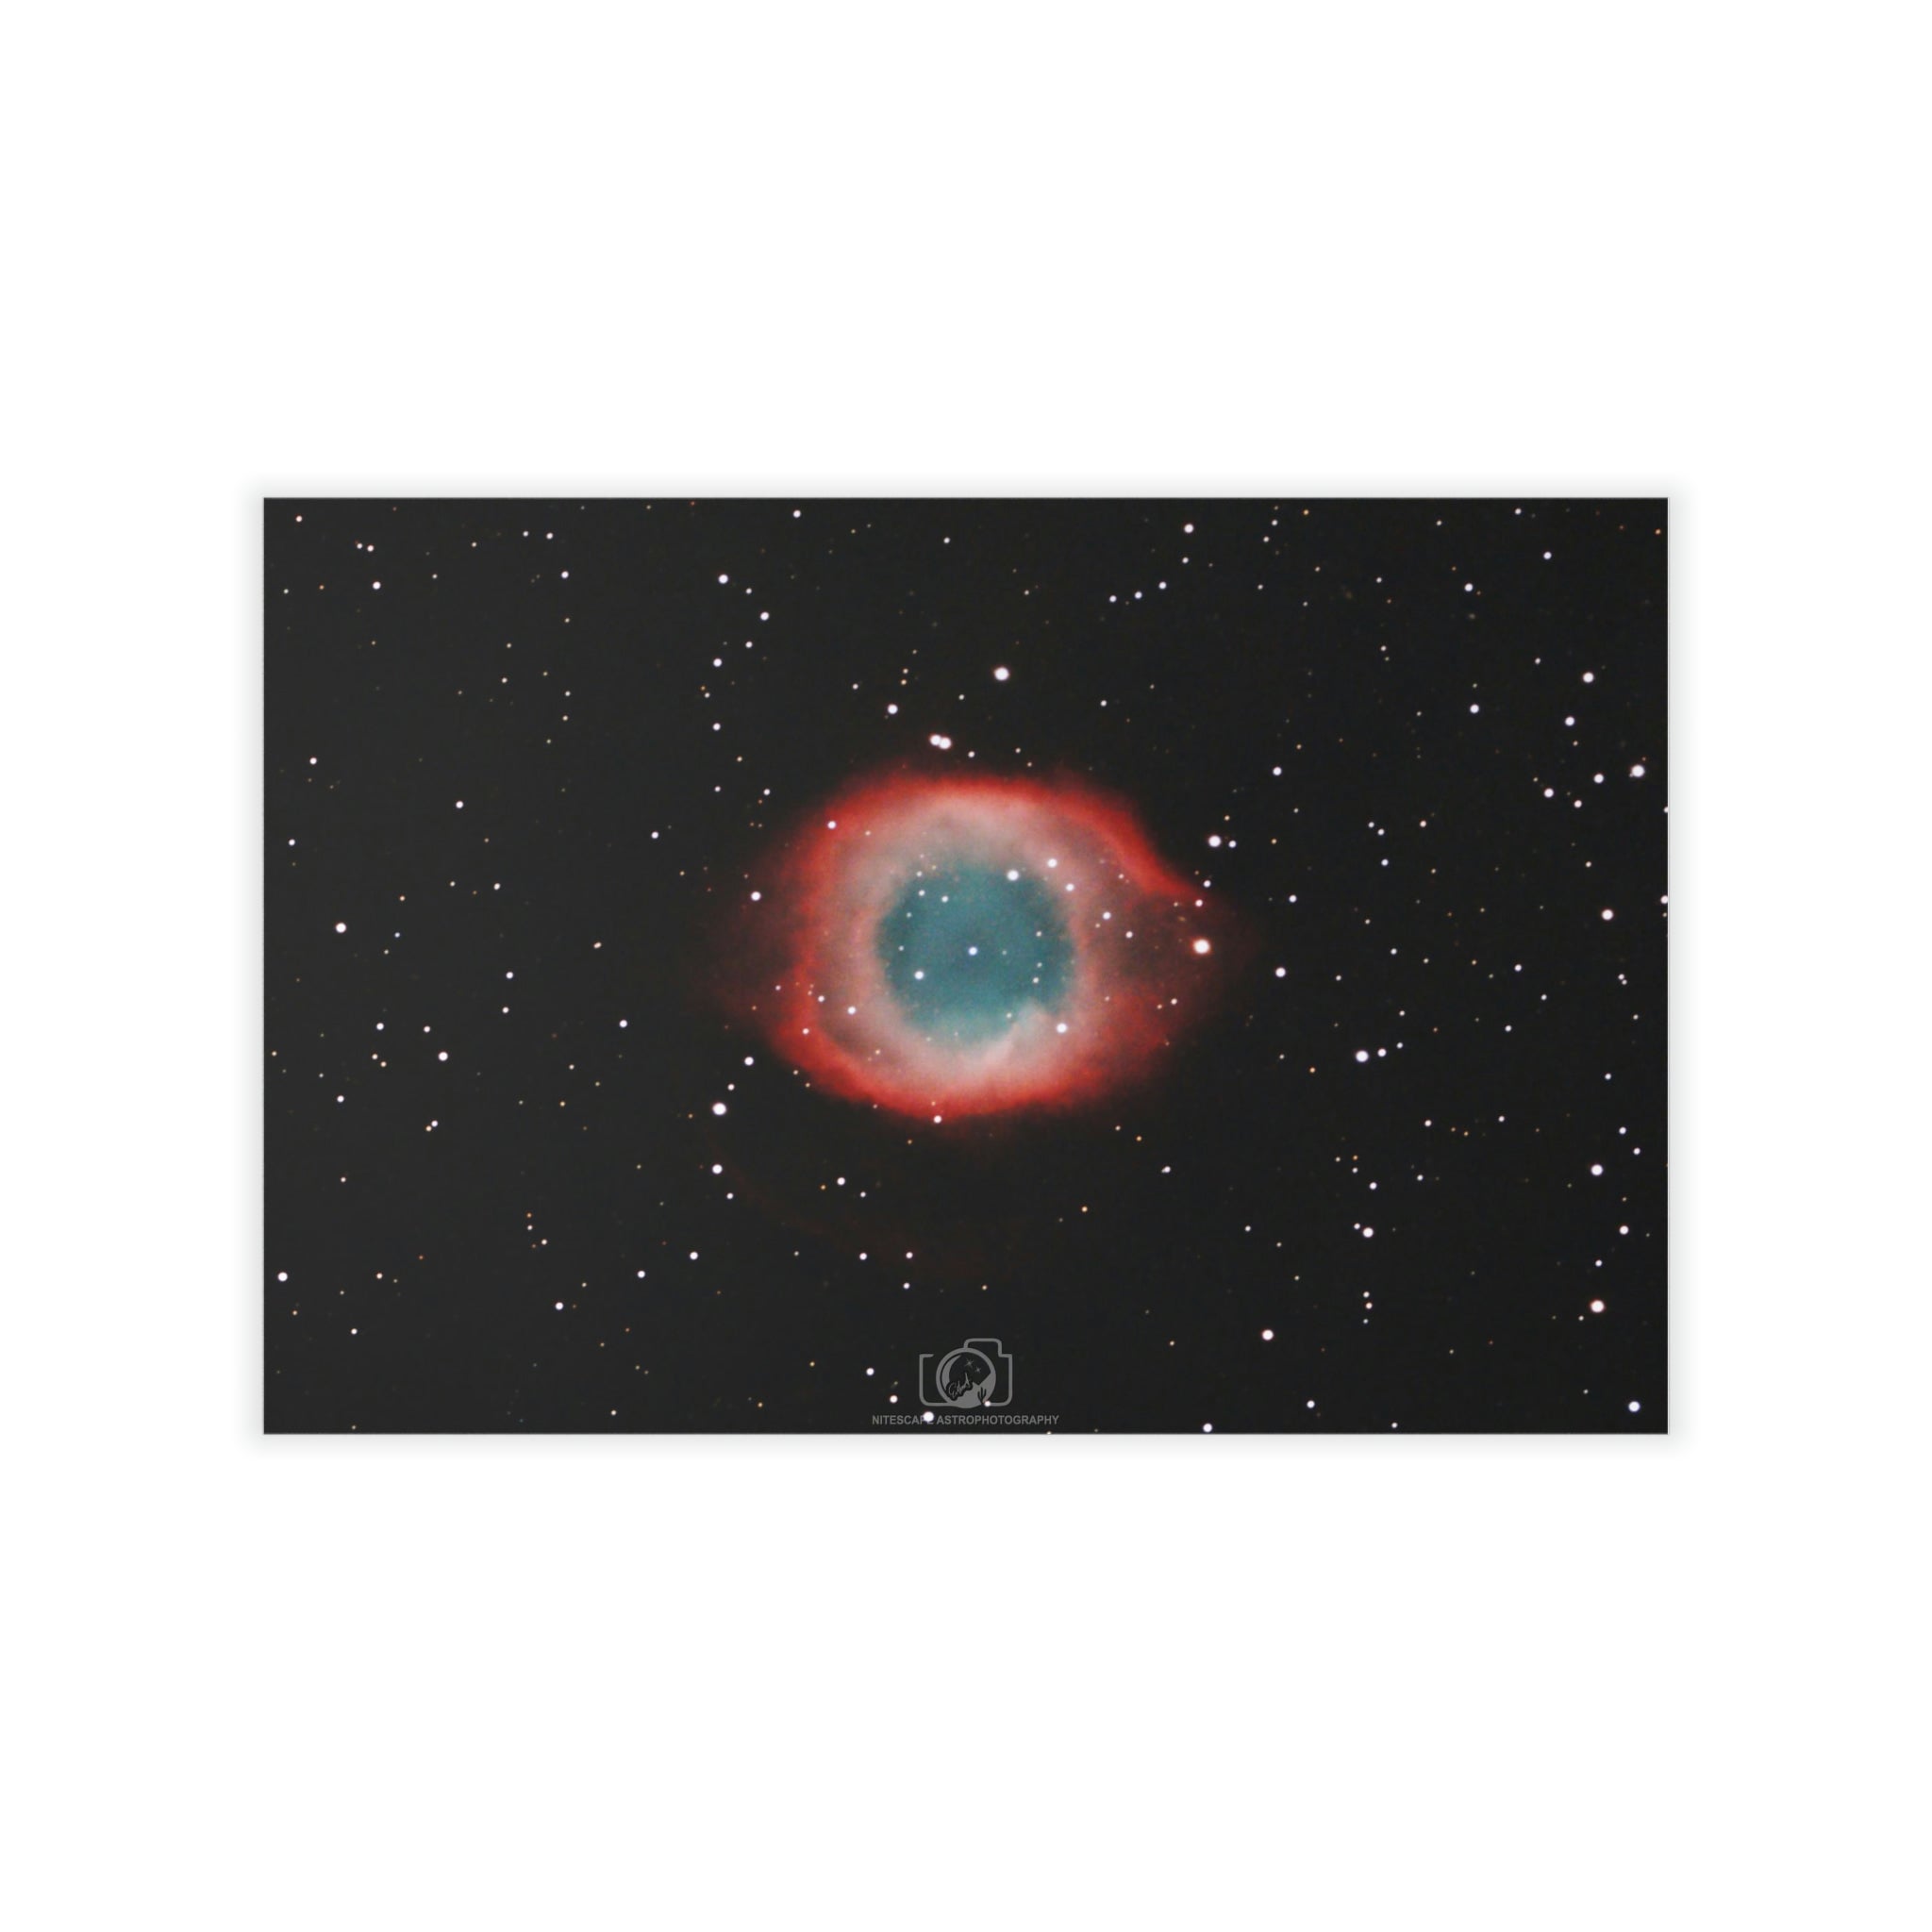 Wall Decals: Helix (Eye of God) Nebula